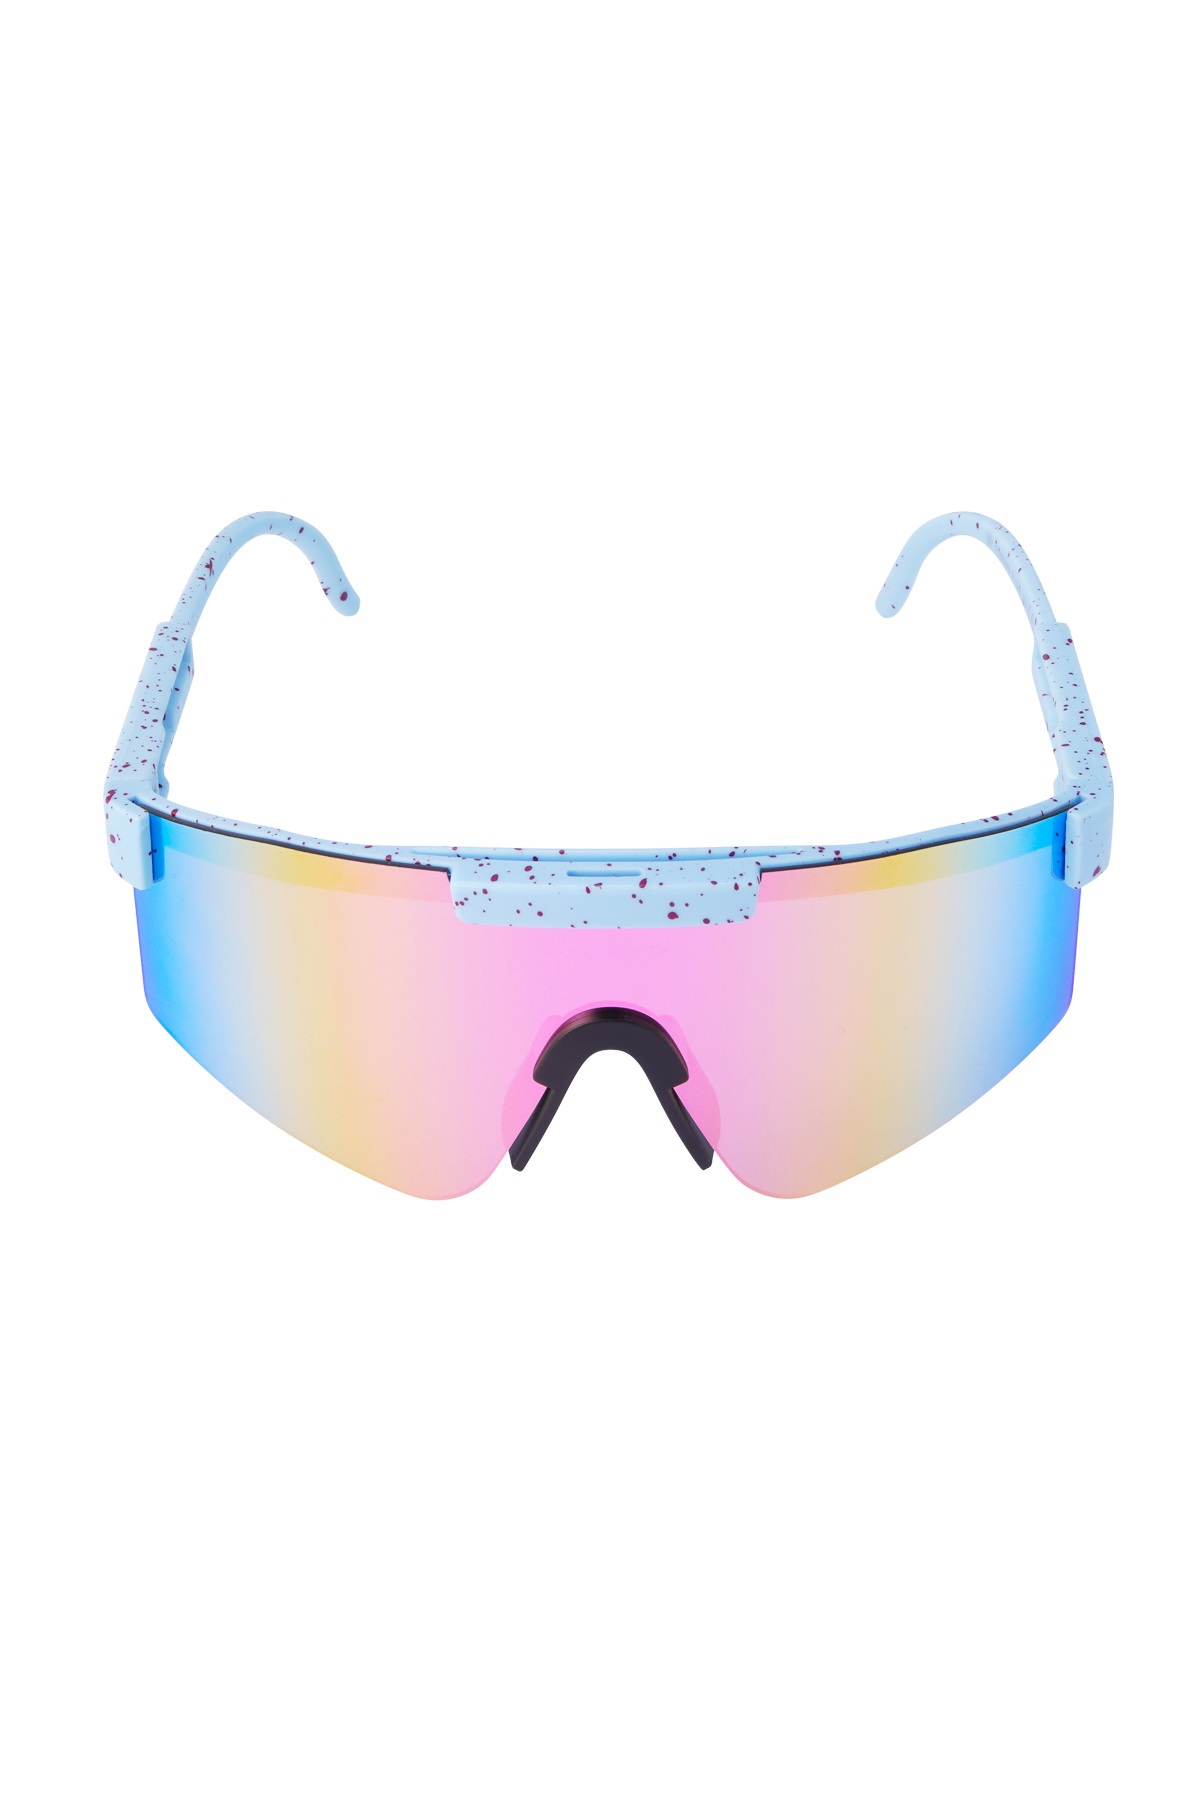 Güneş gözlüğü baskılı renkli lensler - mavi h5 Resim6